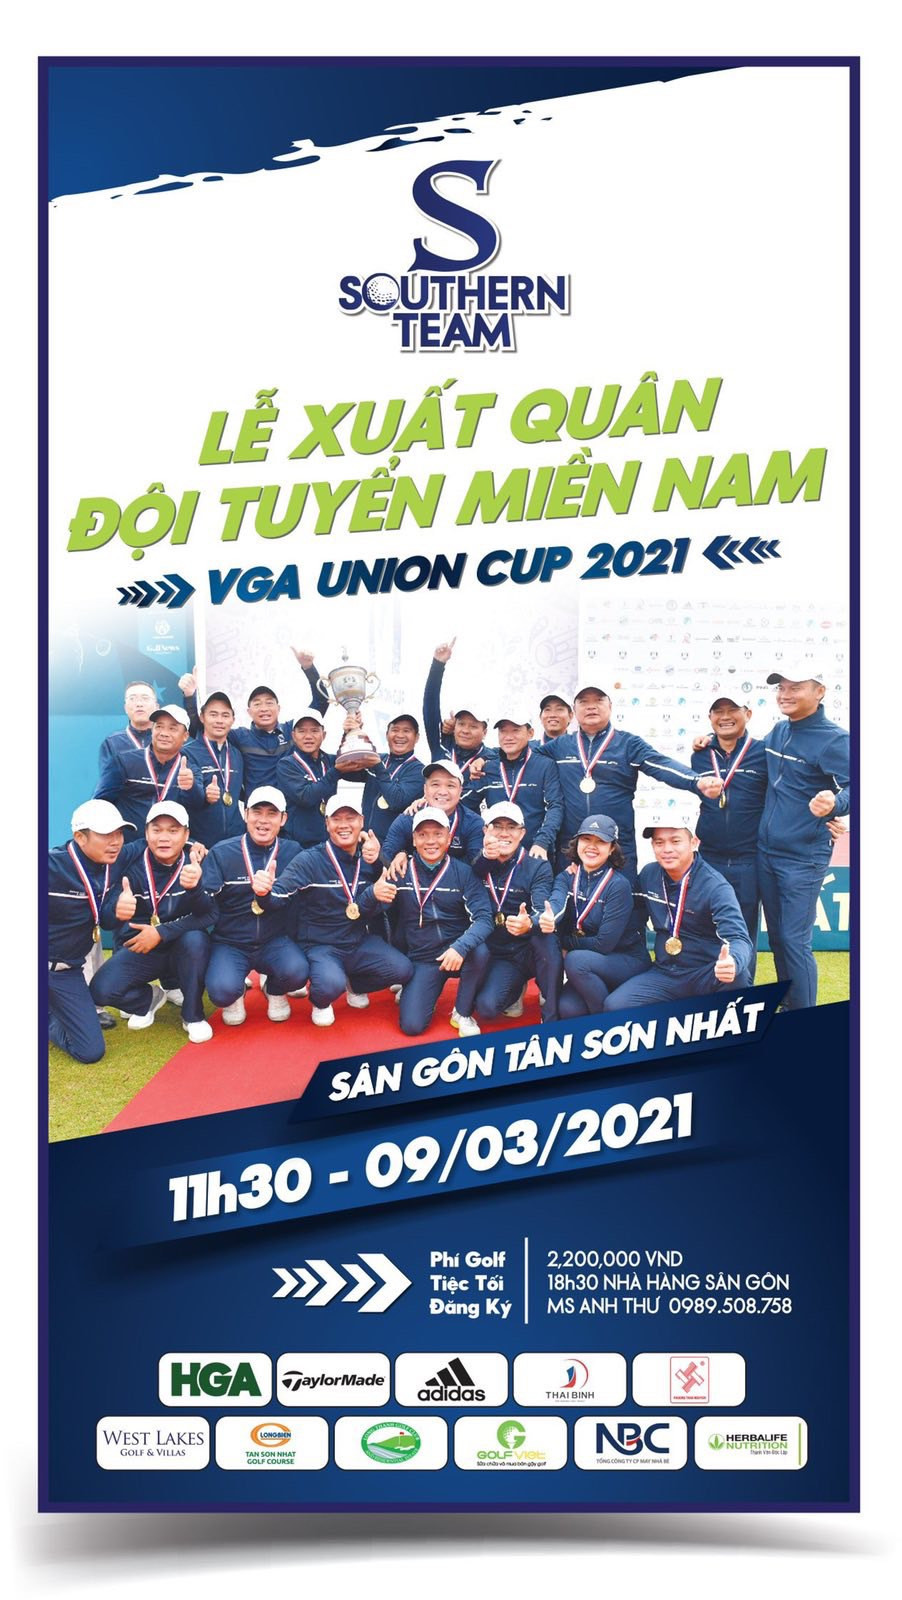 Tuyển miền Nam tổ chức lễ xuất quân dự VGA Union Cup 2021 - Ảnh 1.